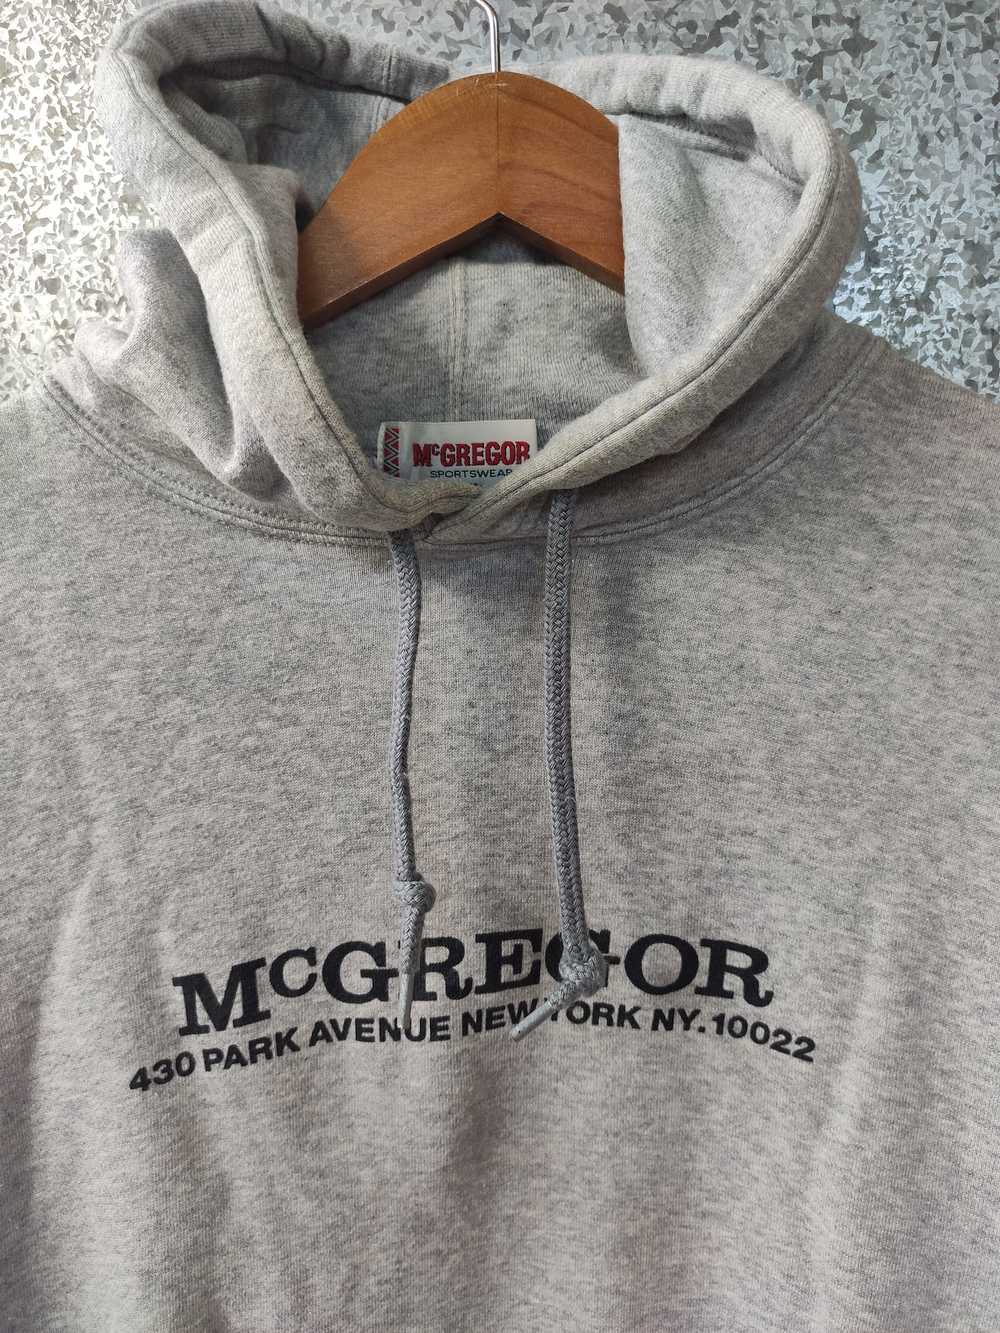 Mcgregor × Vintage McGregor hoodies pull over - image 2